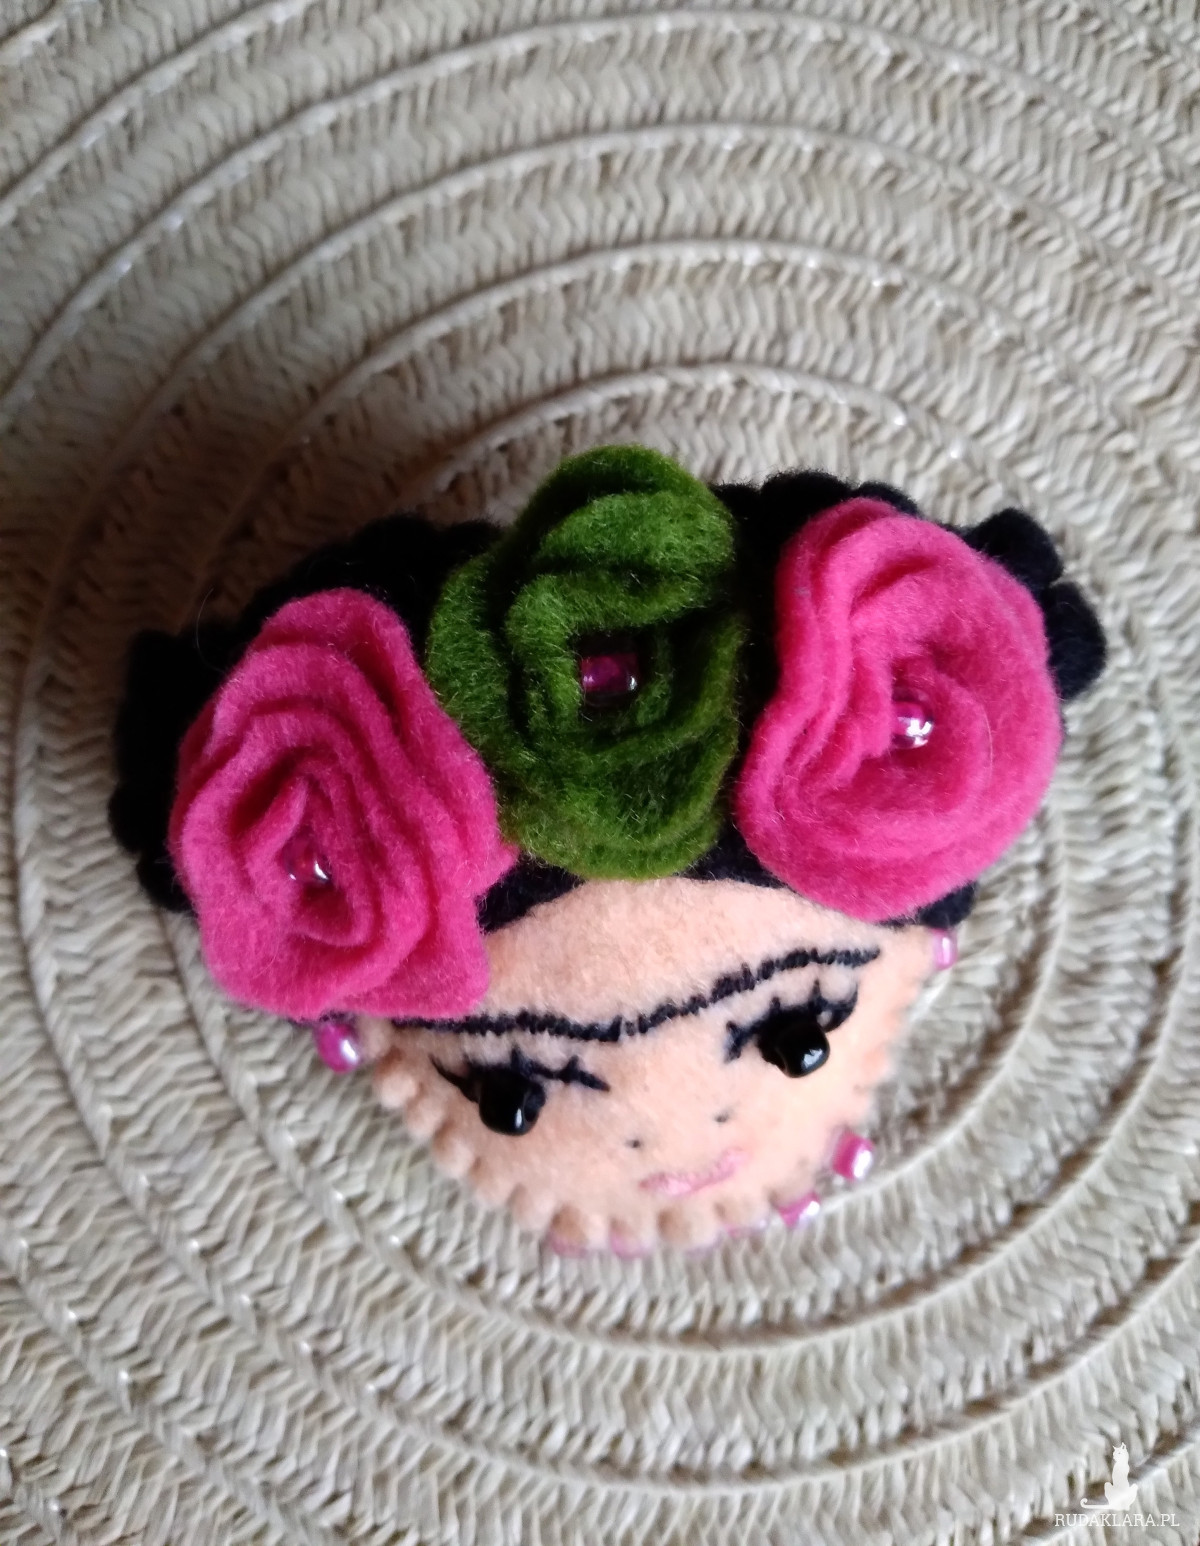 Broszka przypinka Frida Kahlo uszyta ręcznie z filcu róże fuksja oliwkowa zieleń